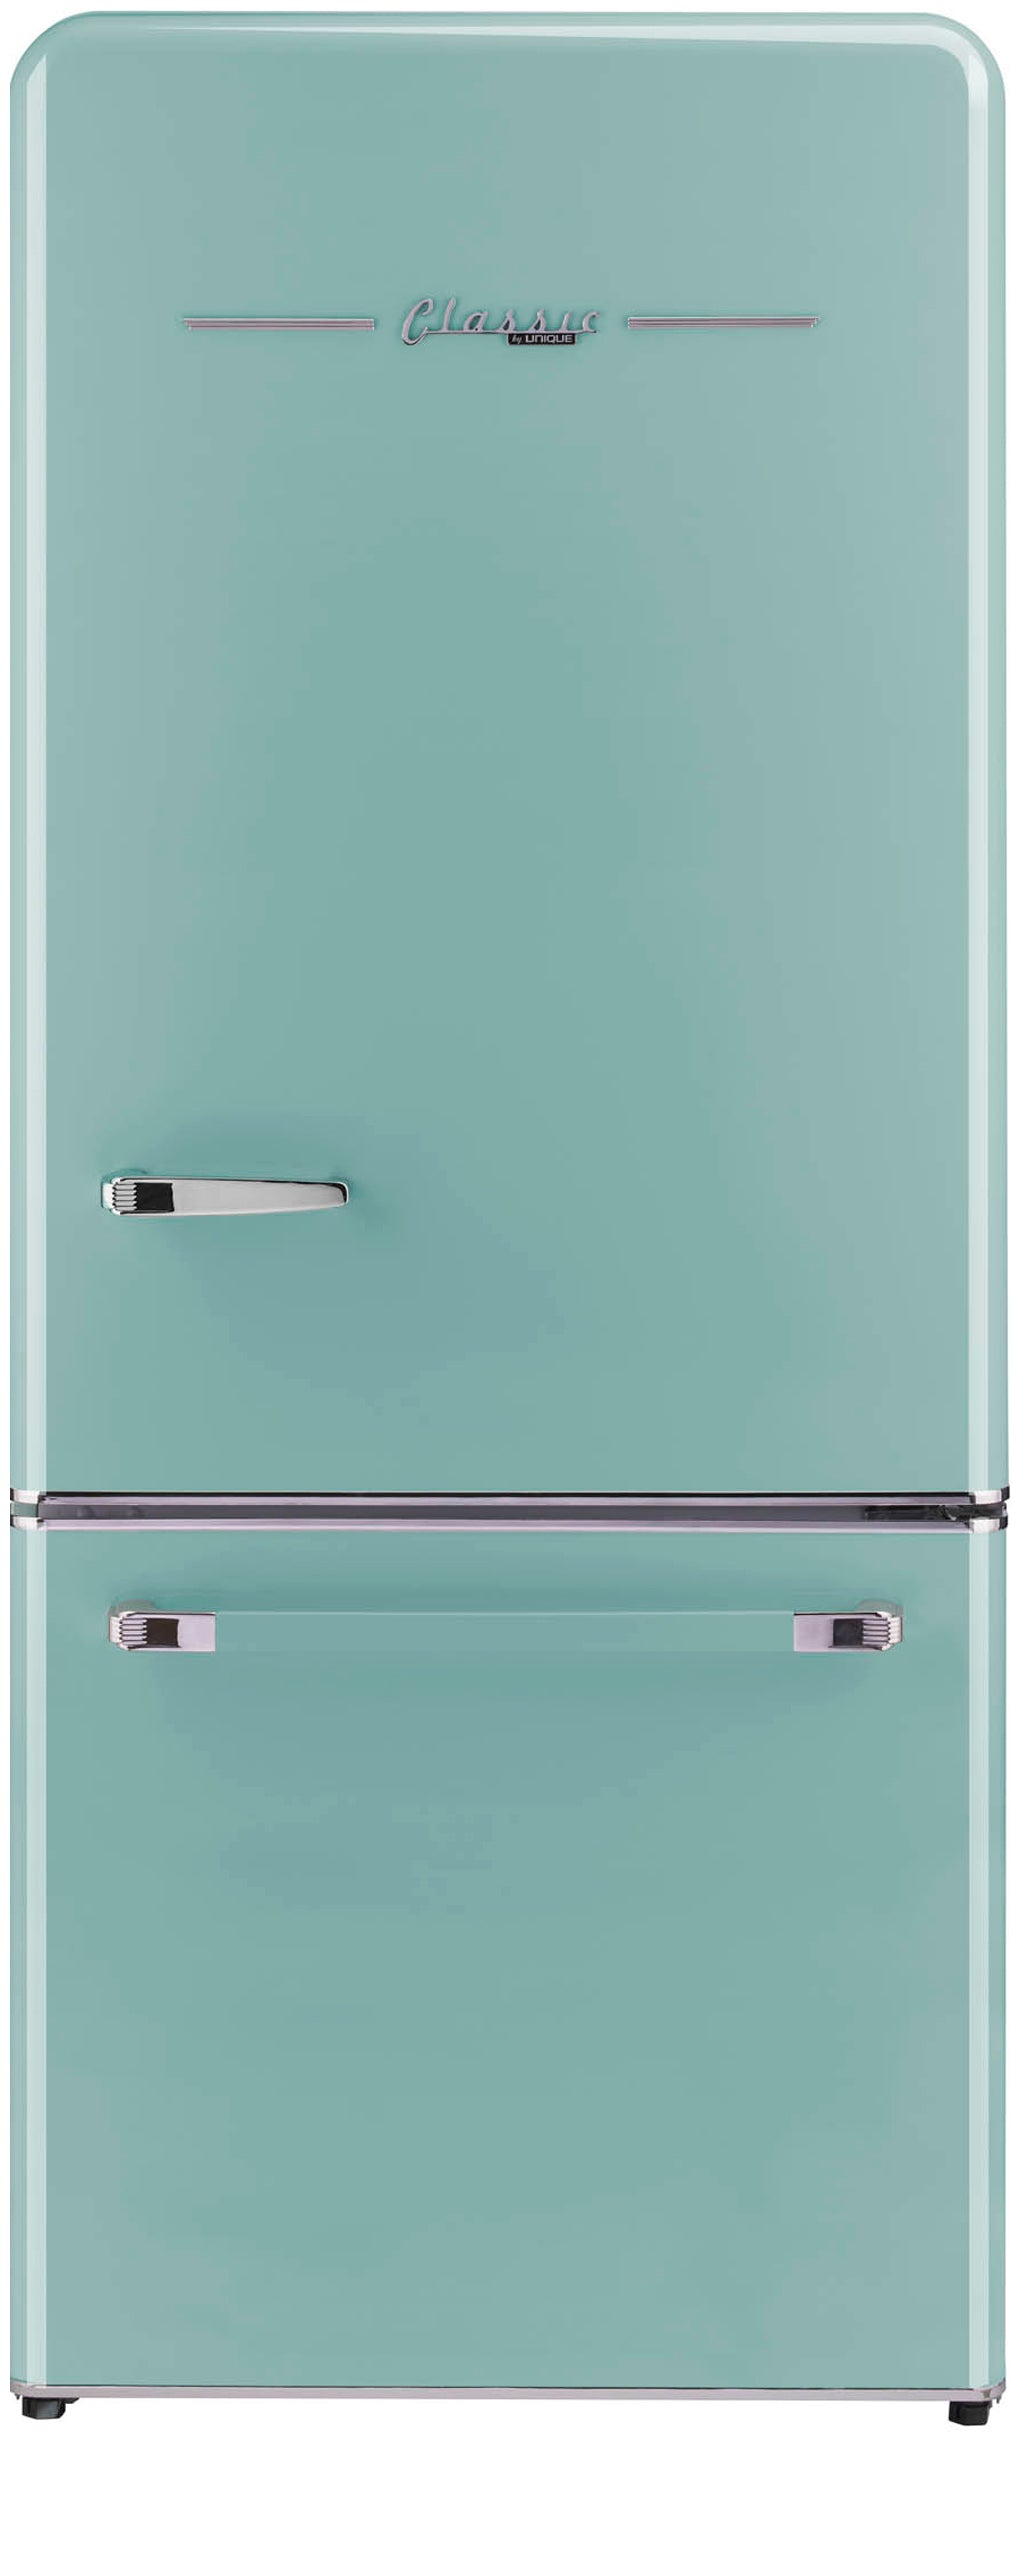 Refrigerators & Freezers Parts